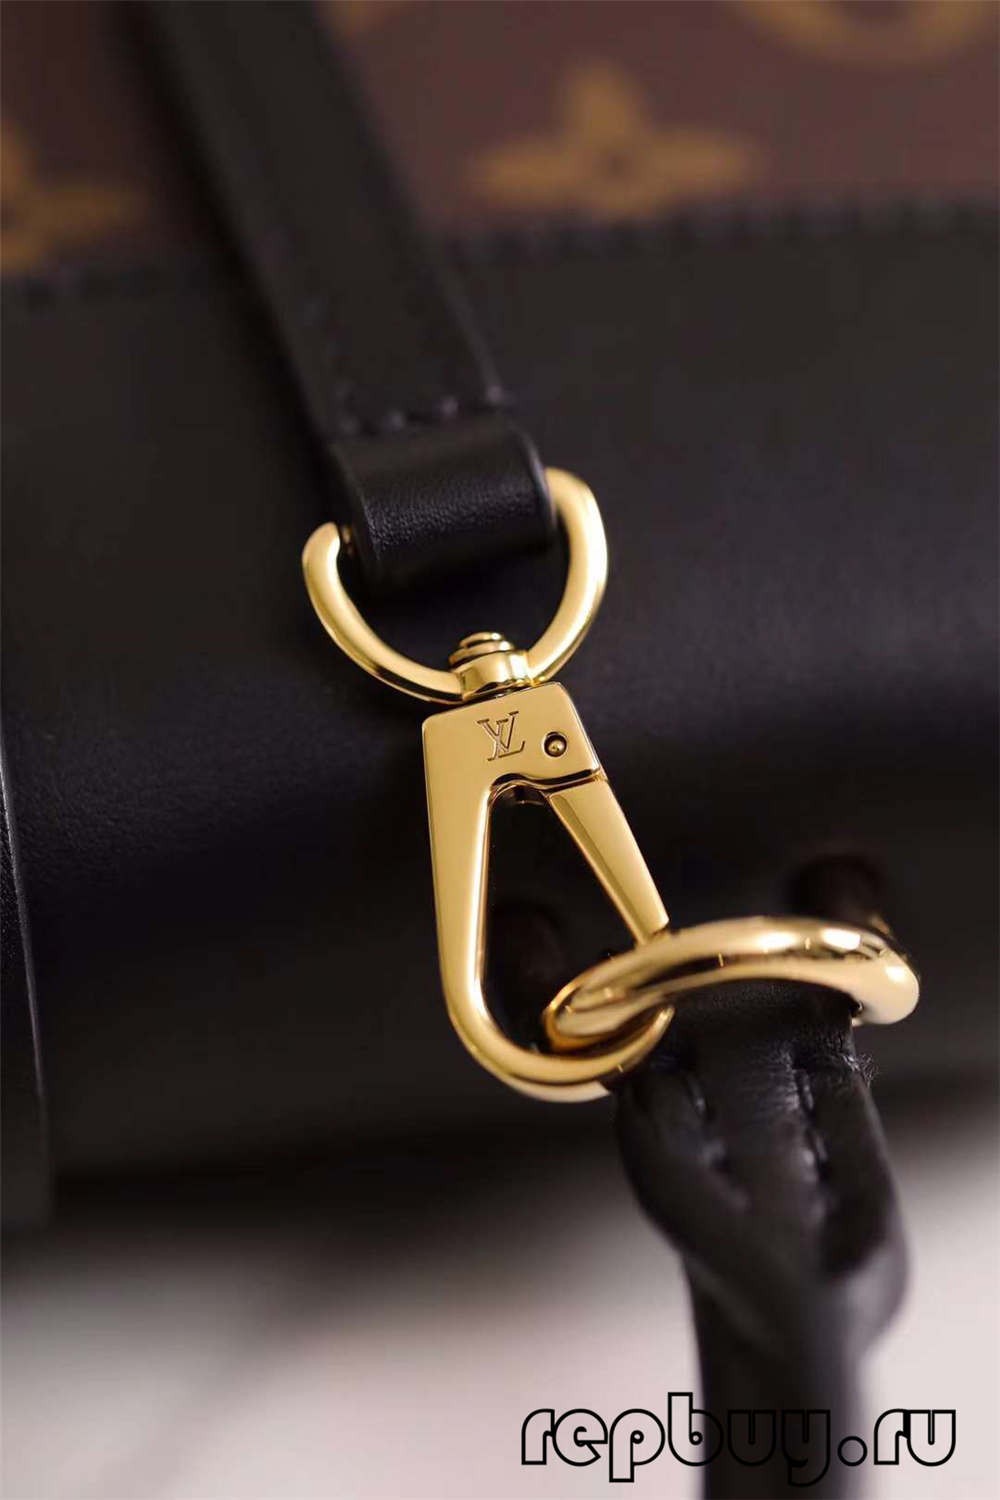 Louis Vuitton M44141 20cm Lock BB Black Top Replika Taschen (2022 Special)-Beste Qualität gefälschte Louis Vuitton-Taschen Online-Shop, Replik-Designer-Tasche ru